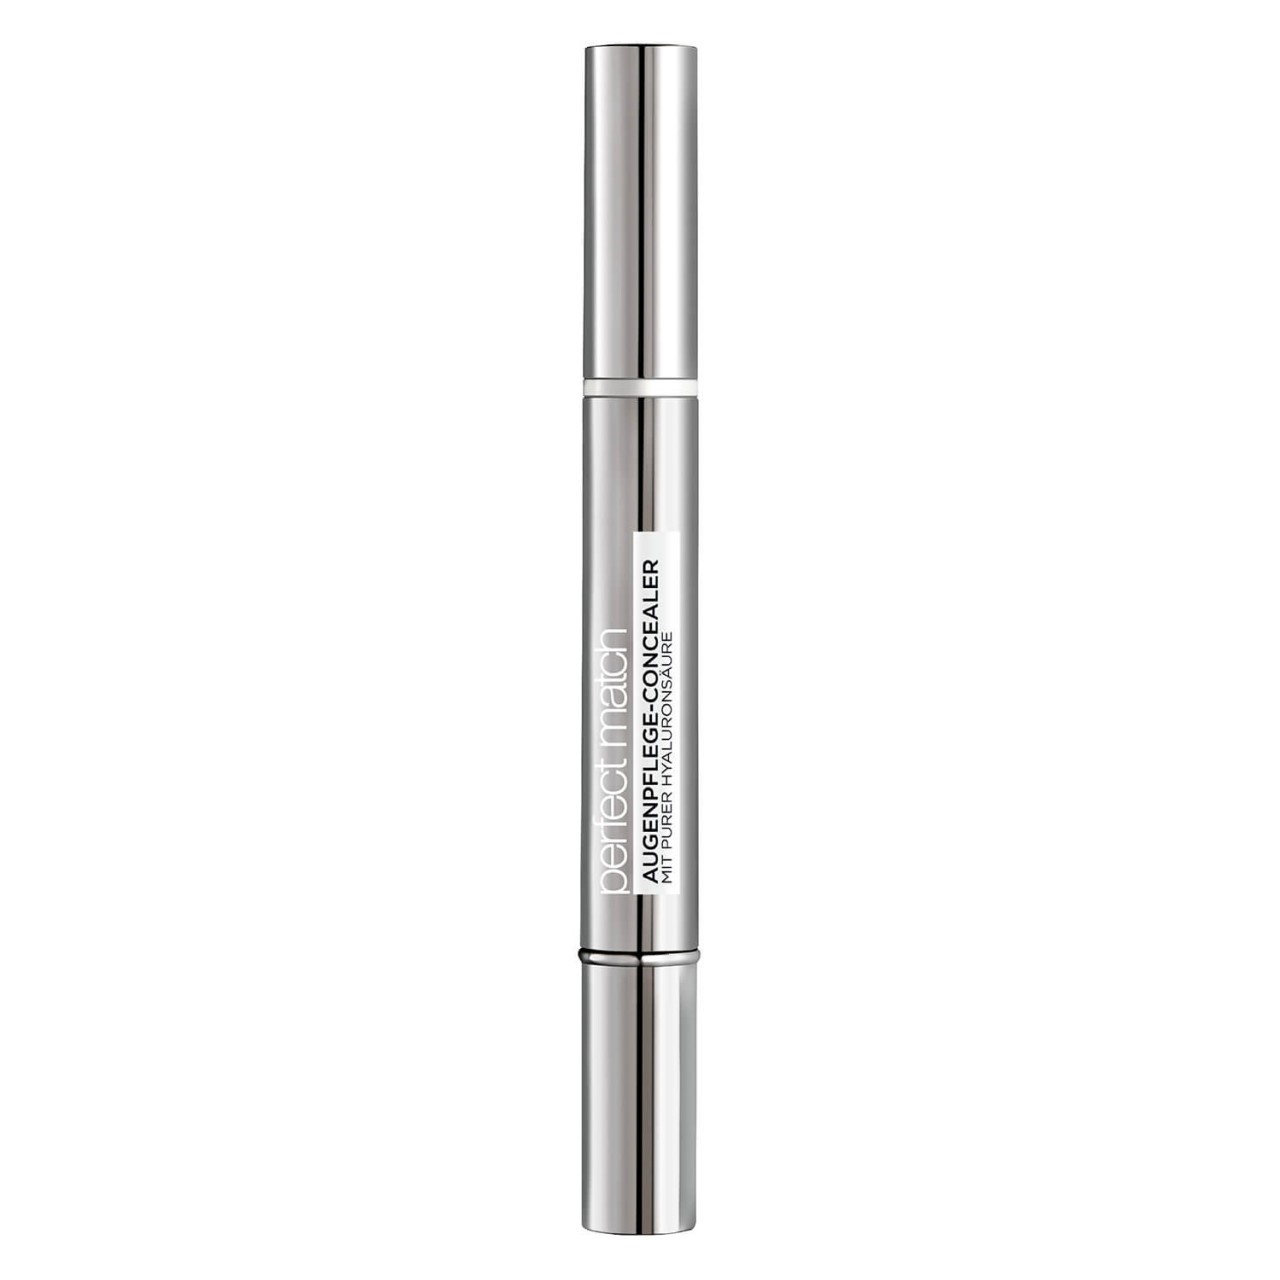 LOréal Perfect Match - Augenpflege-Concealer 1-2D Ivory Beige von L'Oréal Paris